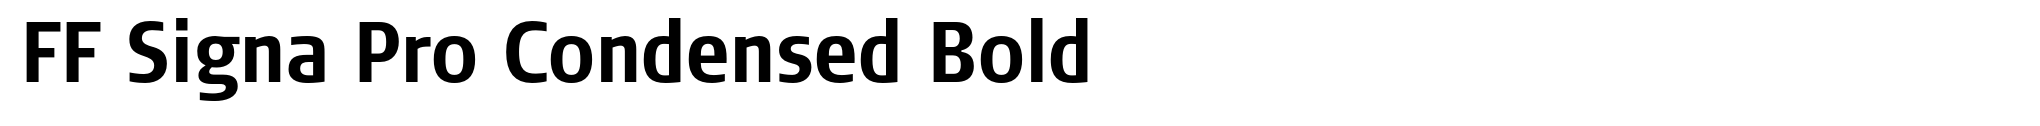 FF Signa Pro Condensed Bold image